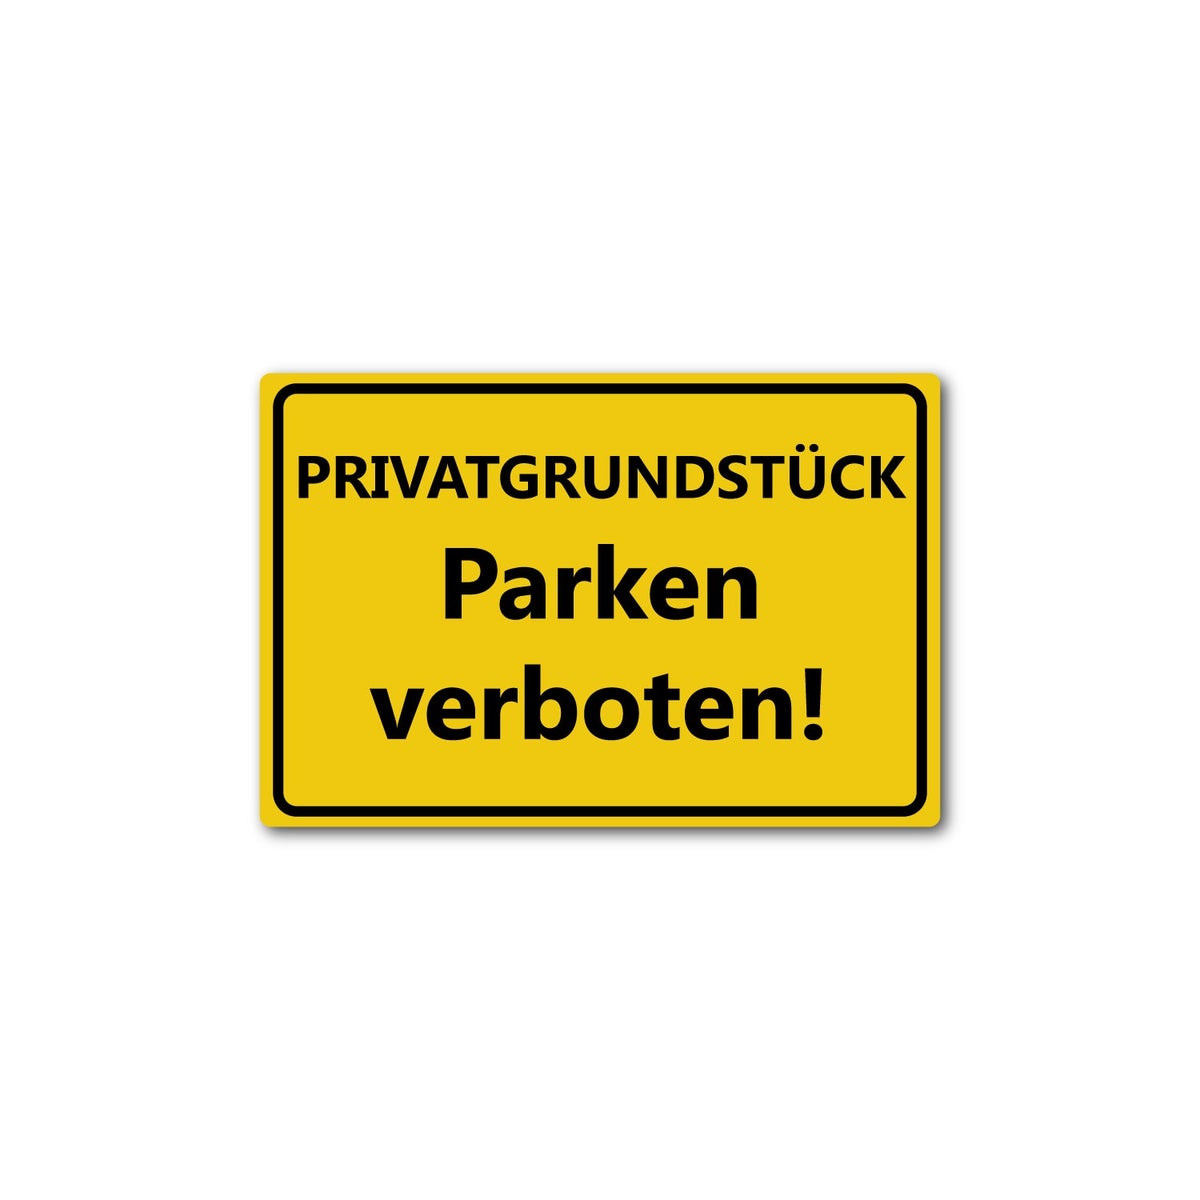 Privatgrundstück Parken verboten - reflektierendes Schild - gelb - ALU DIBOND / XL (30 x 20 cm)